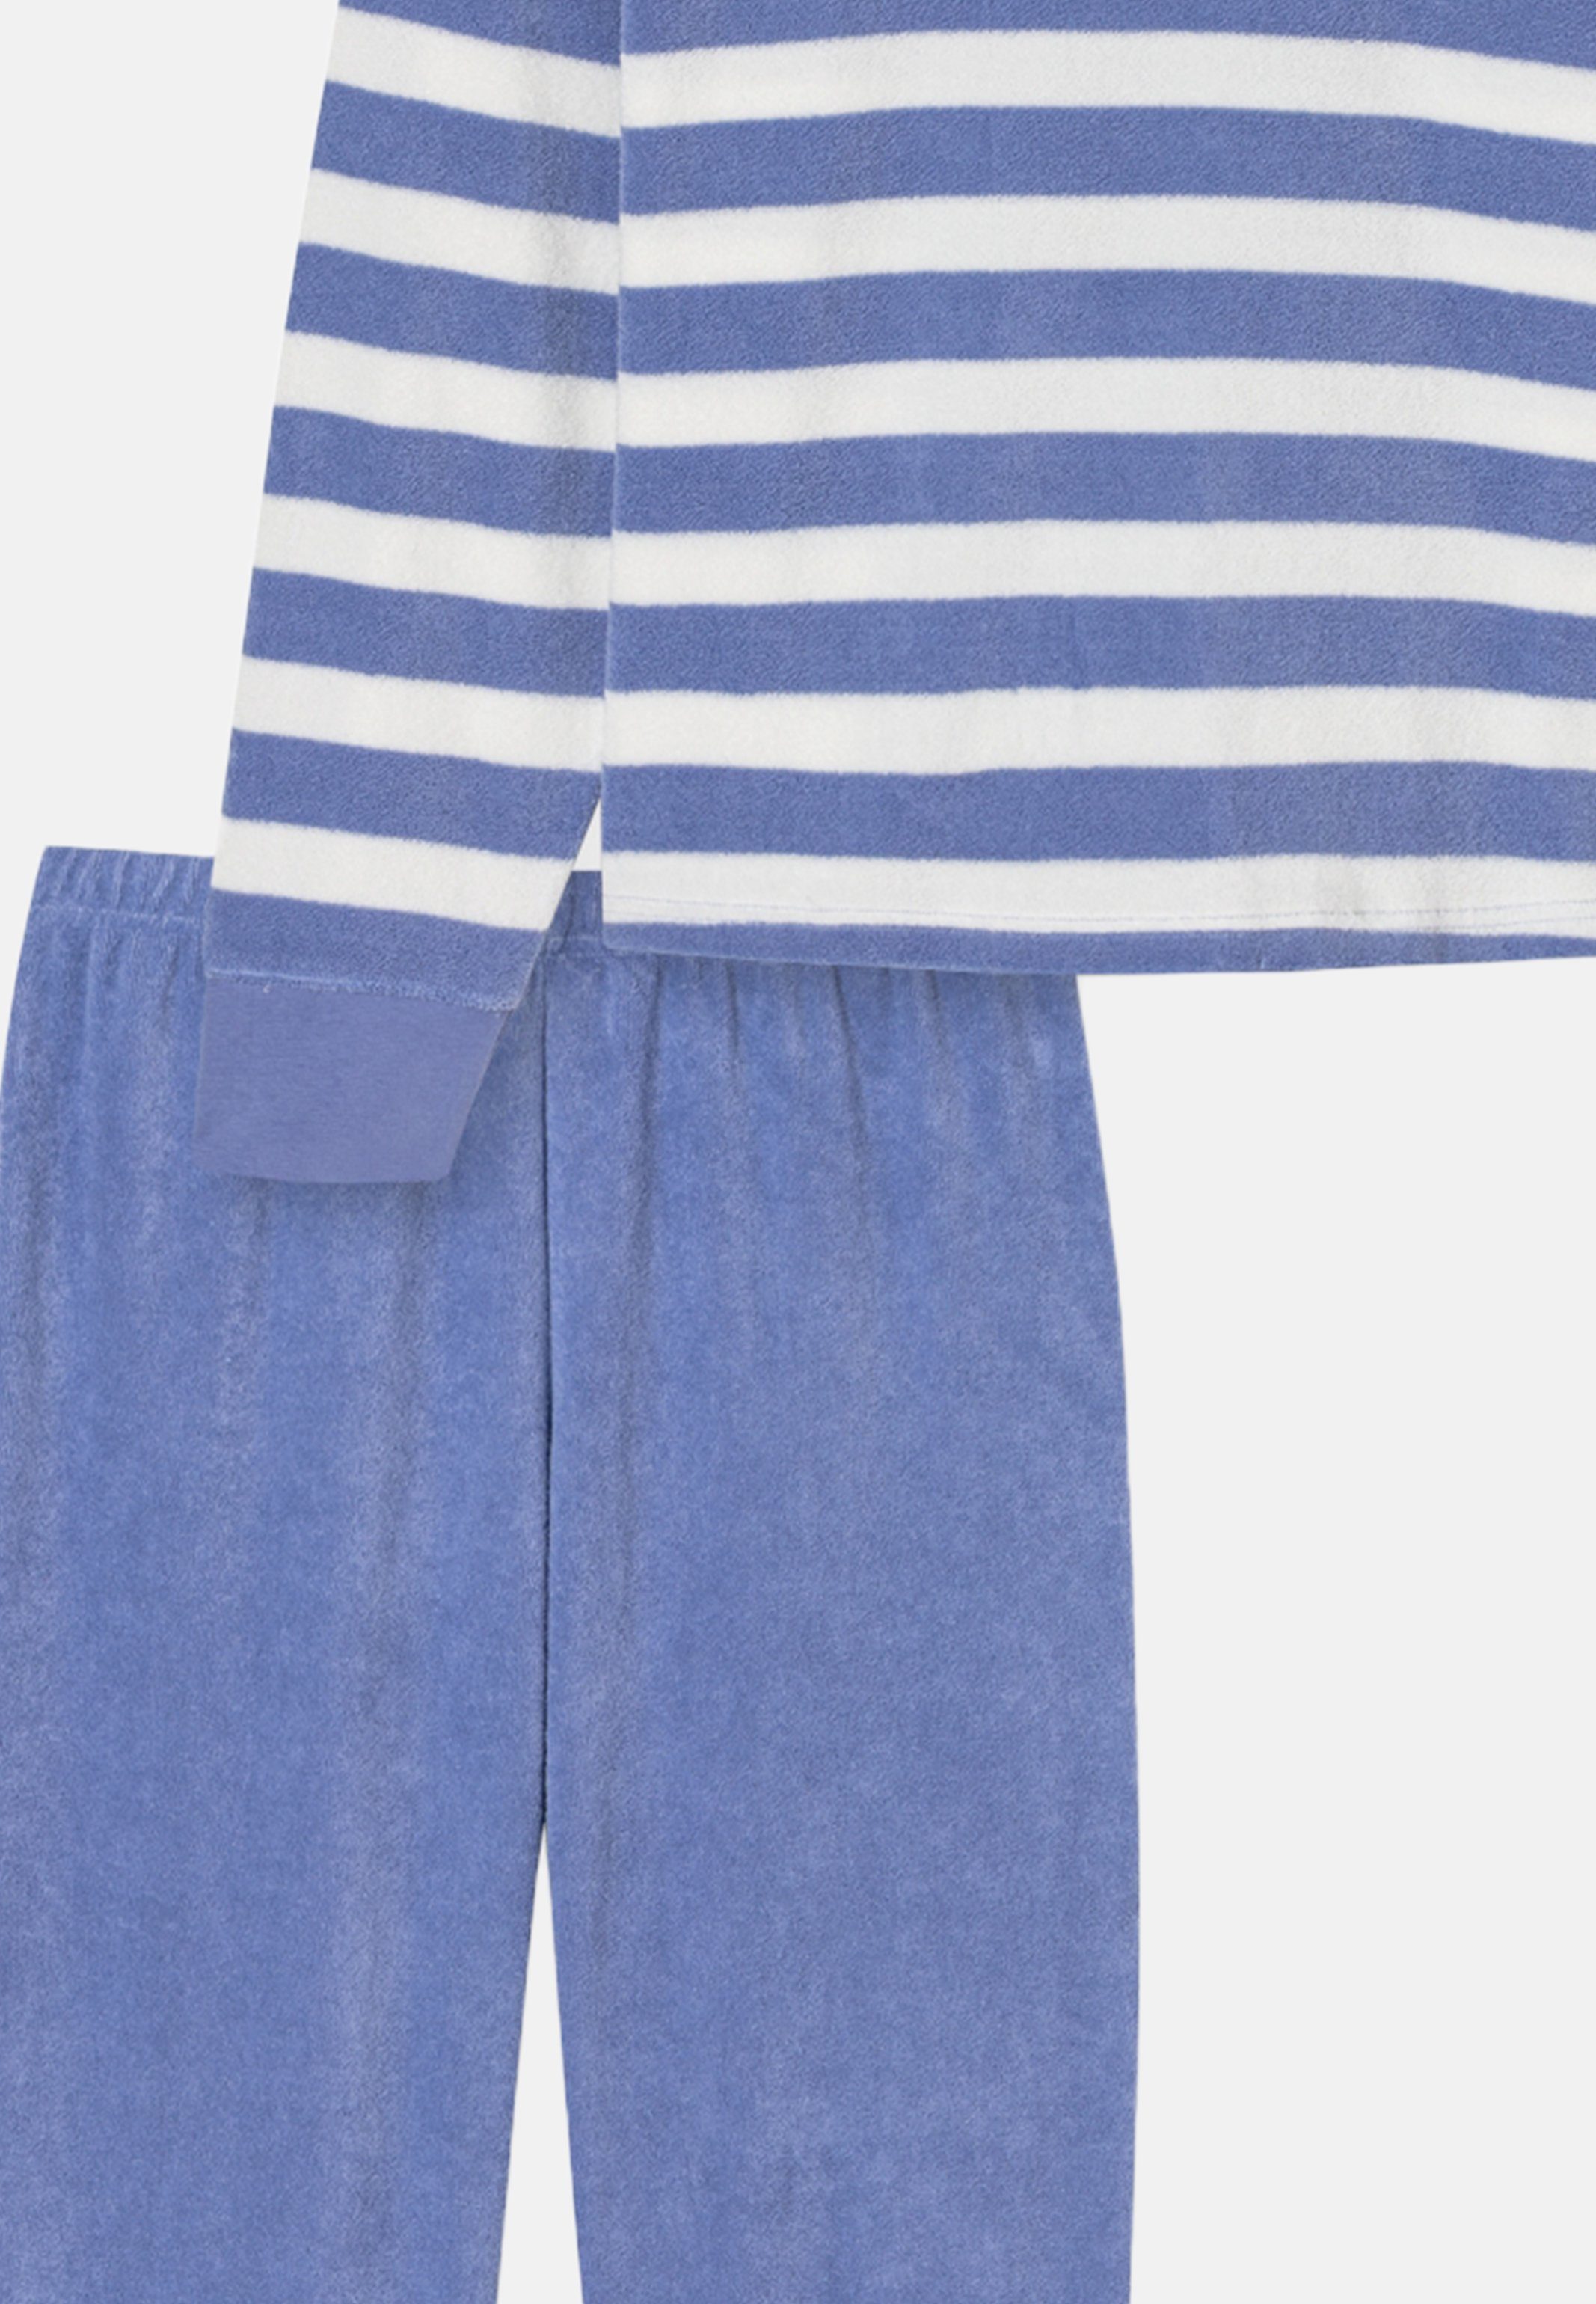 Schlafanzug Nightwear Baumwolle an tlg) und Schiesser - Beinen - Bündchen Armen (Set, 2 Pyjama Komfortable